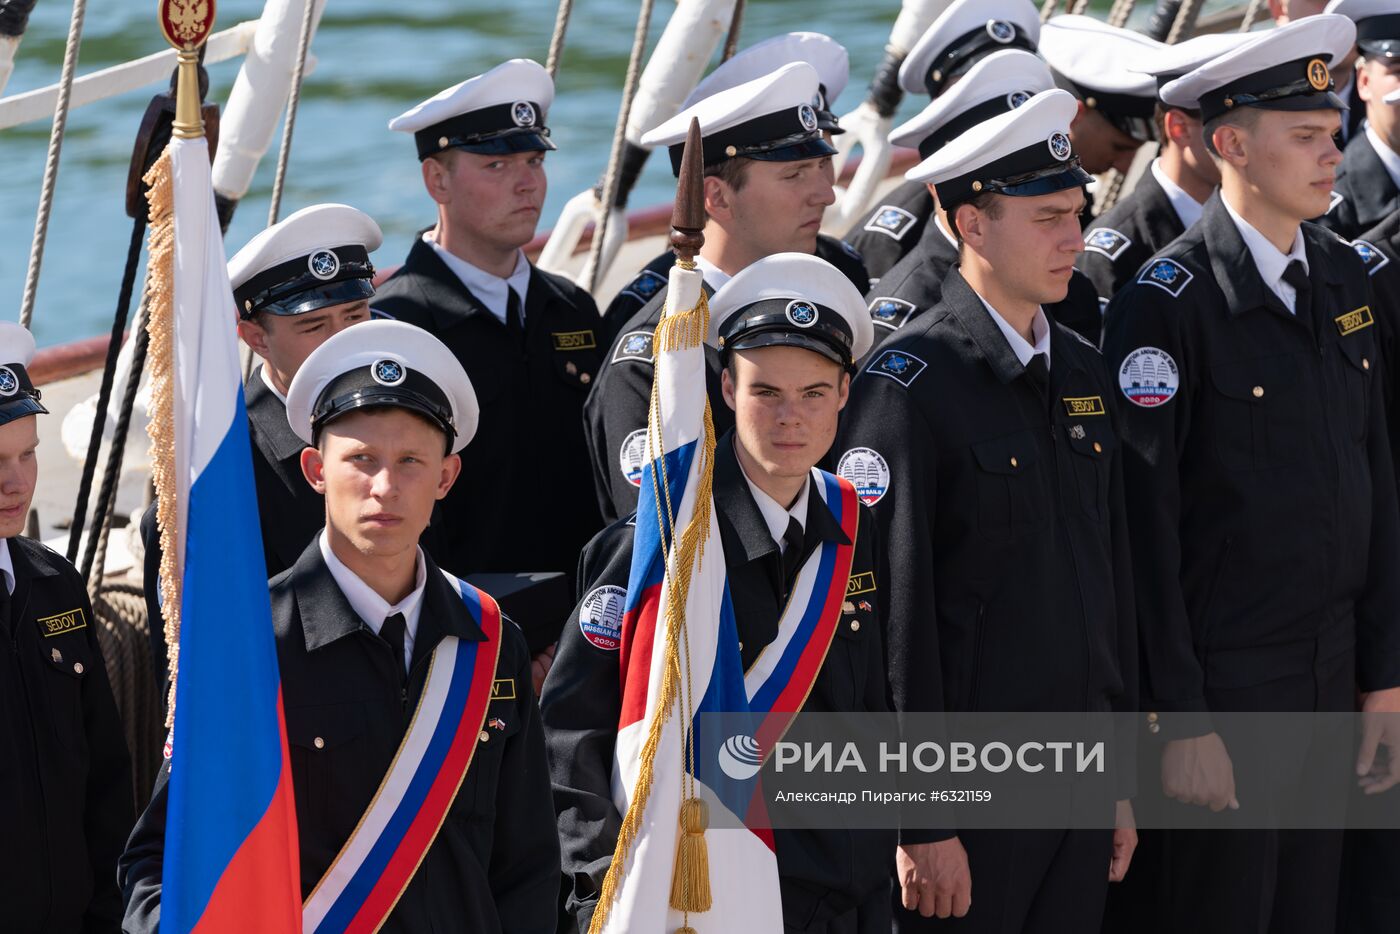 Парусное судно "Седов" зашло в порт Петропавловска-Камчатского